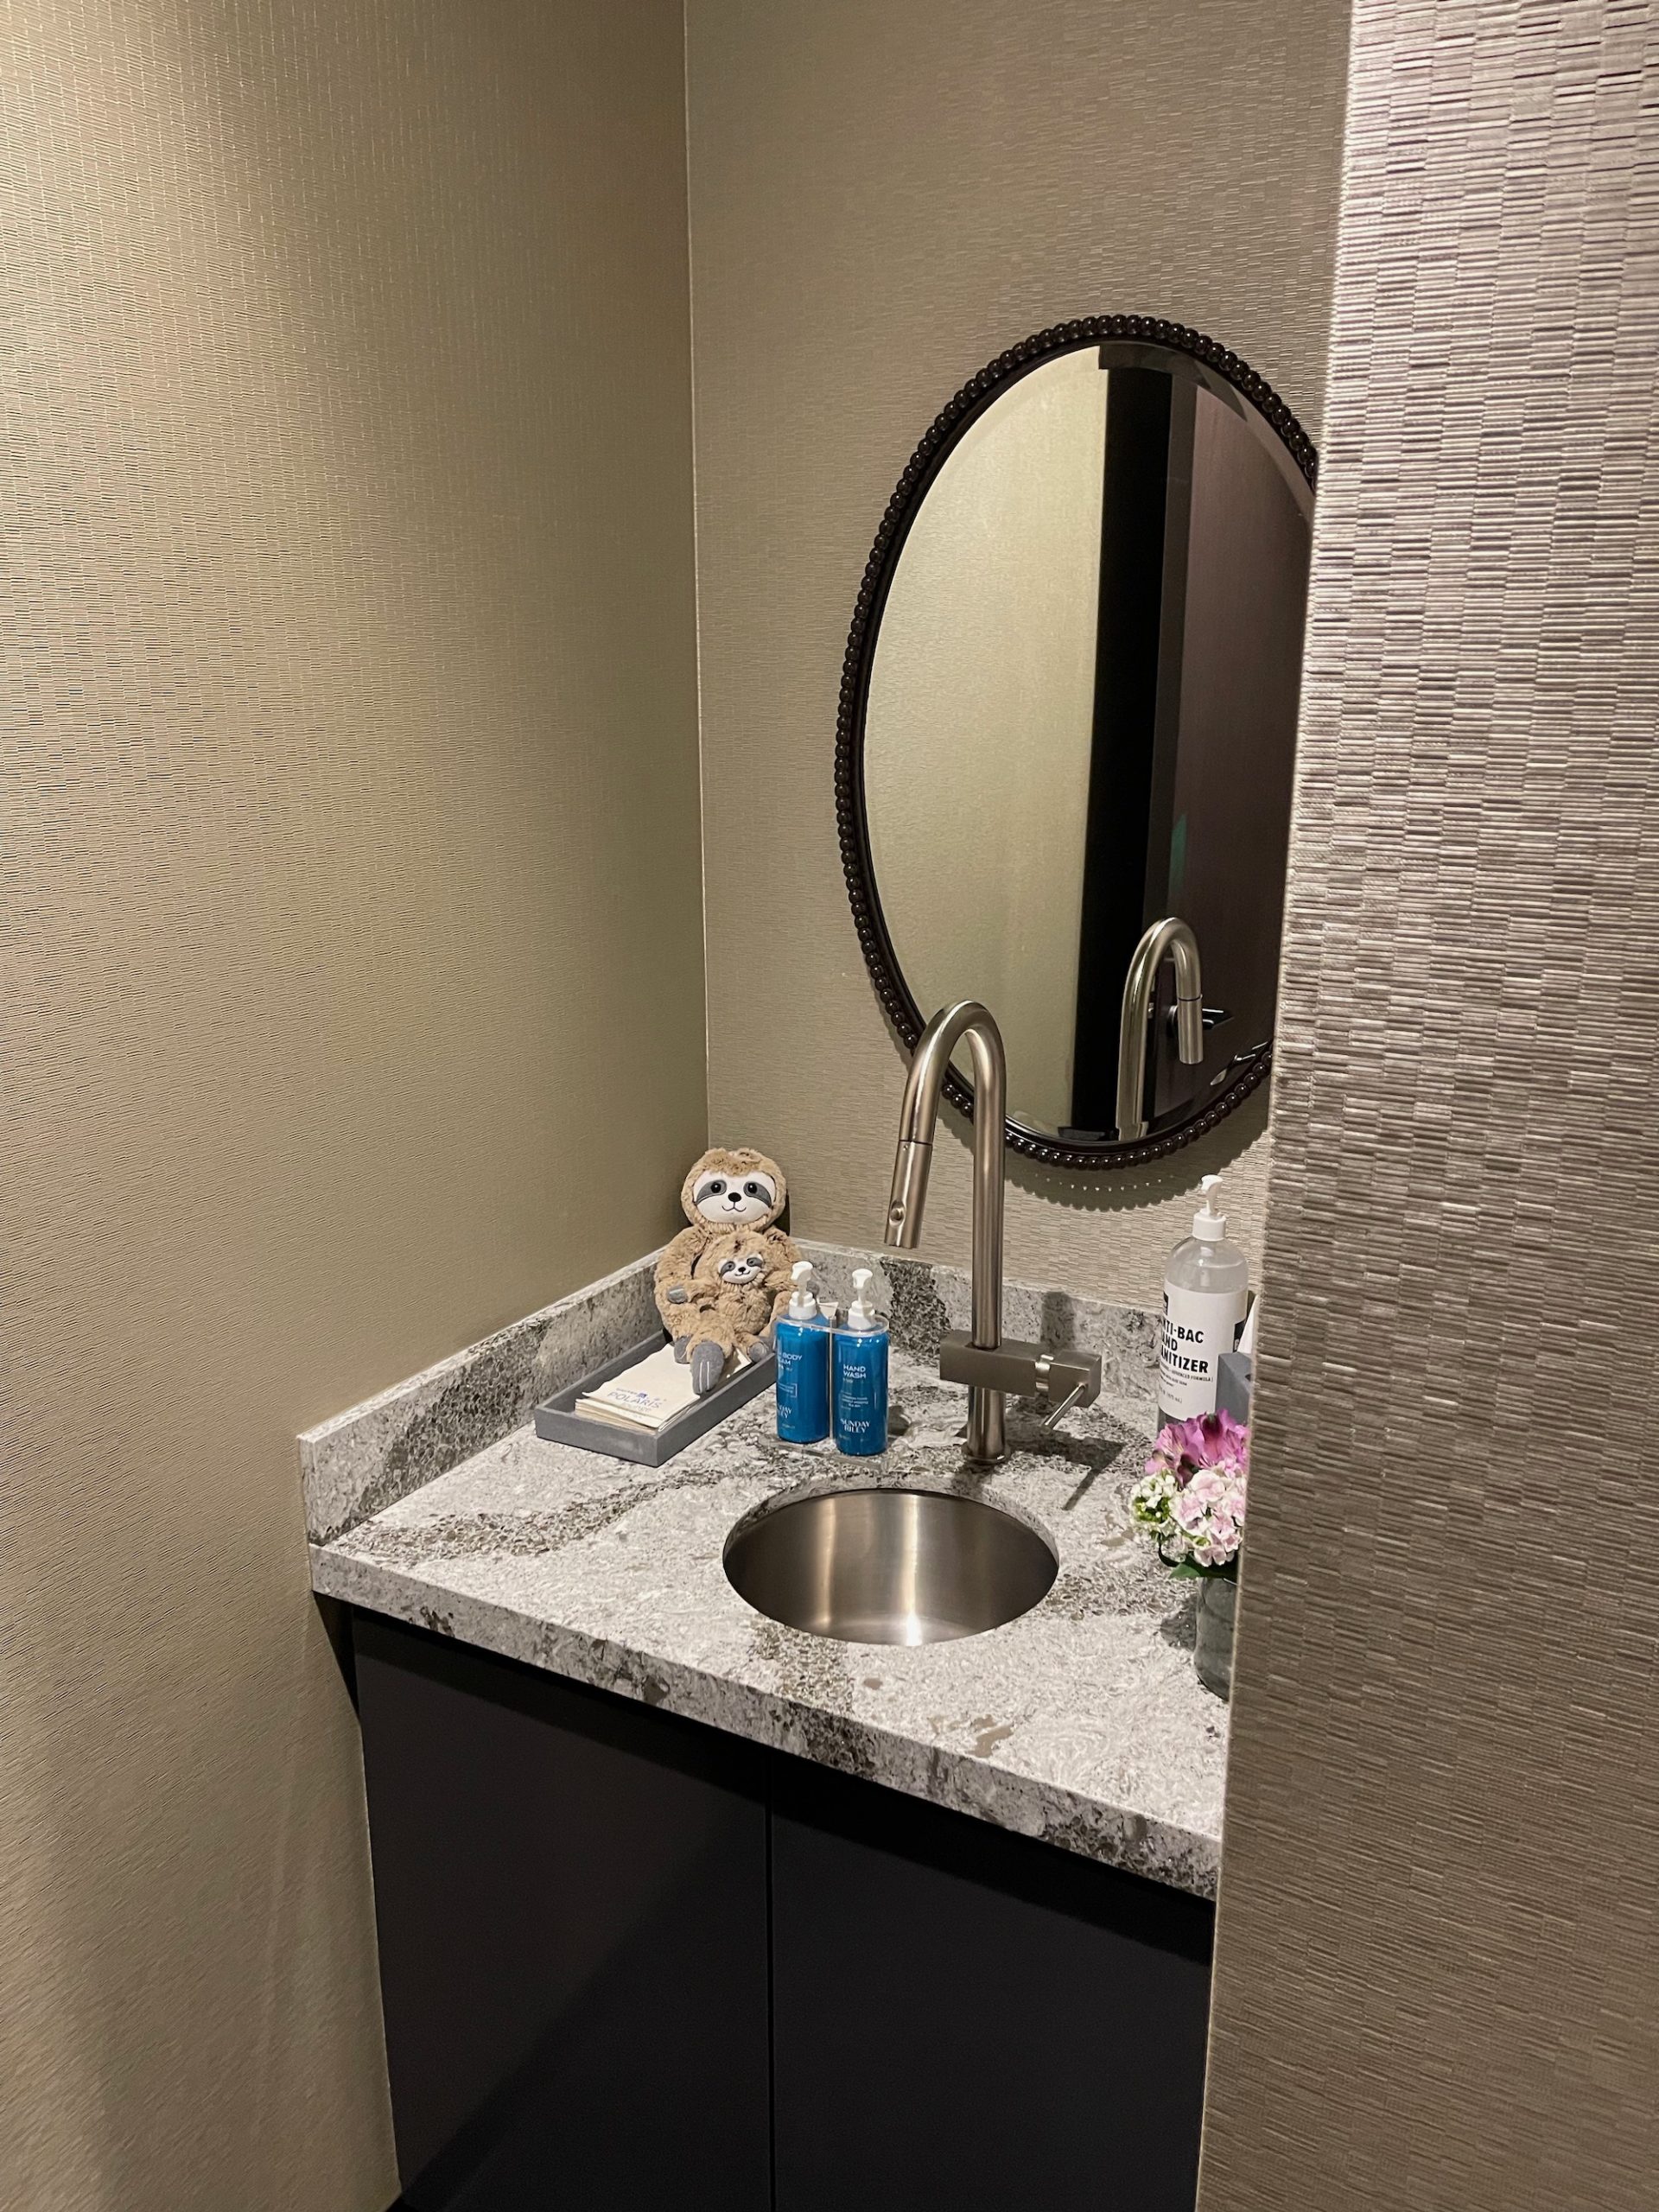 a bathroom sink with a mirror and a teddy bear